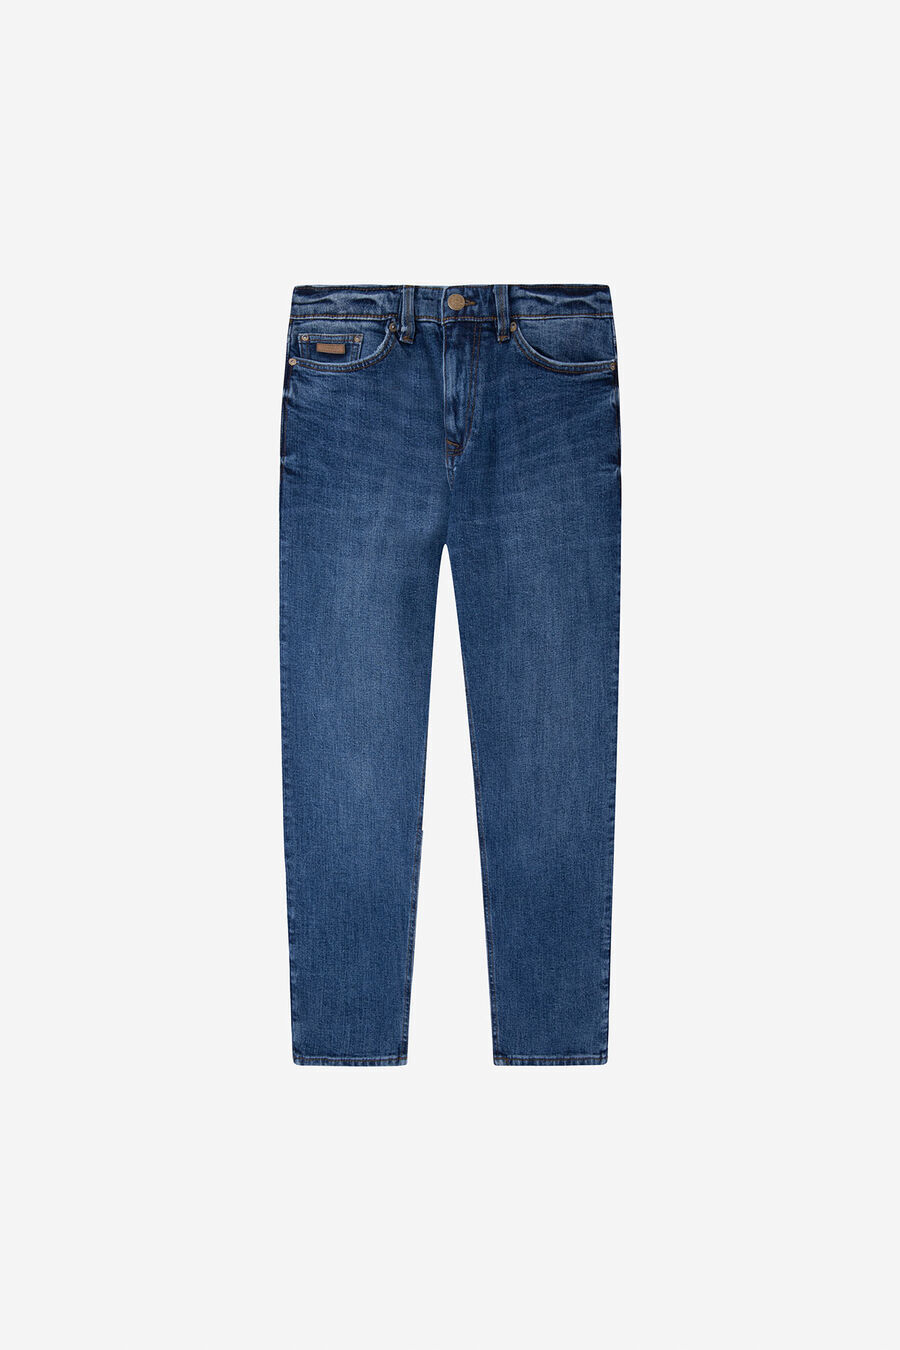 Springfield Jeans comfort slim crop gris foncé lavés Springfield bleuté